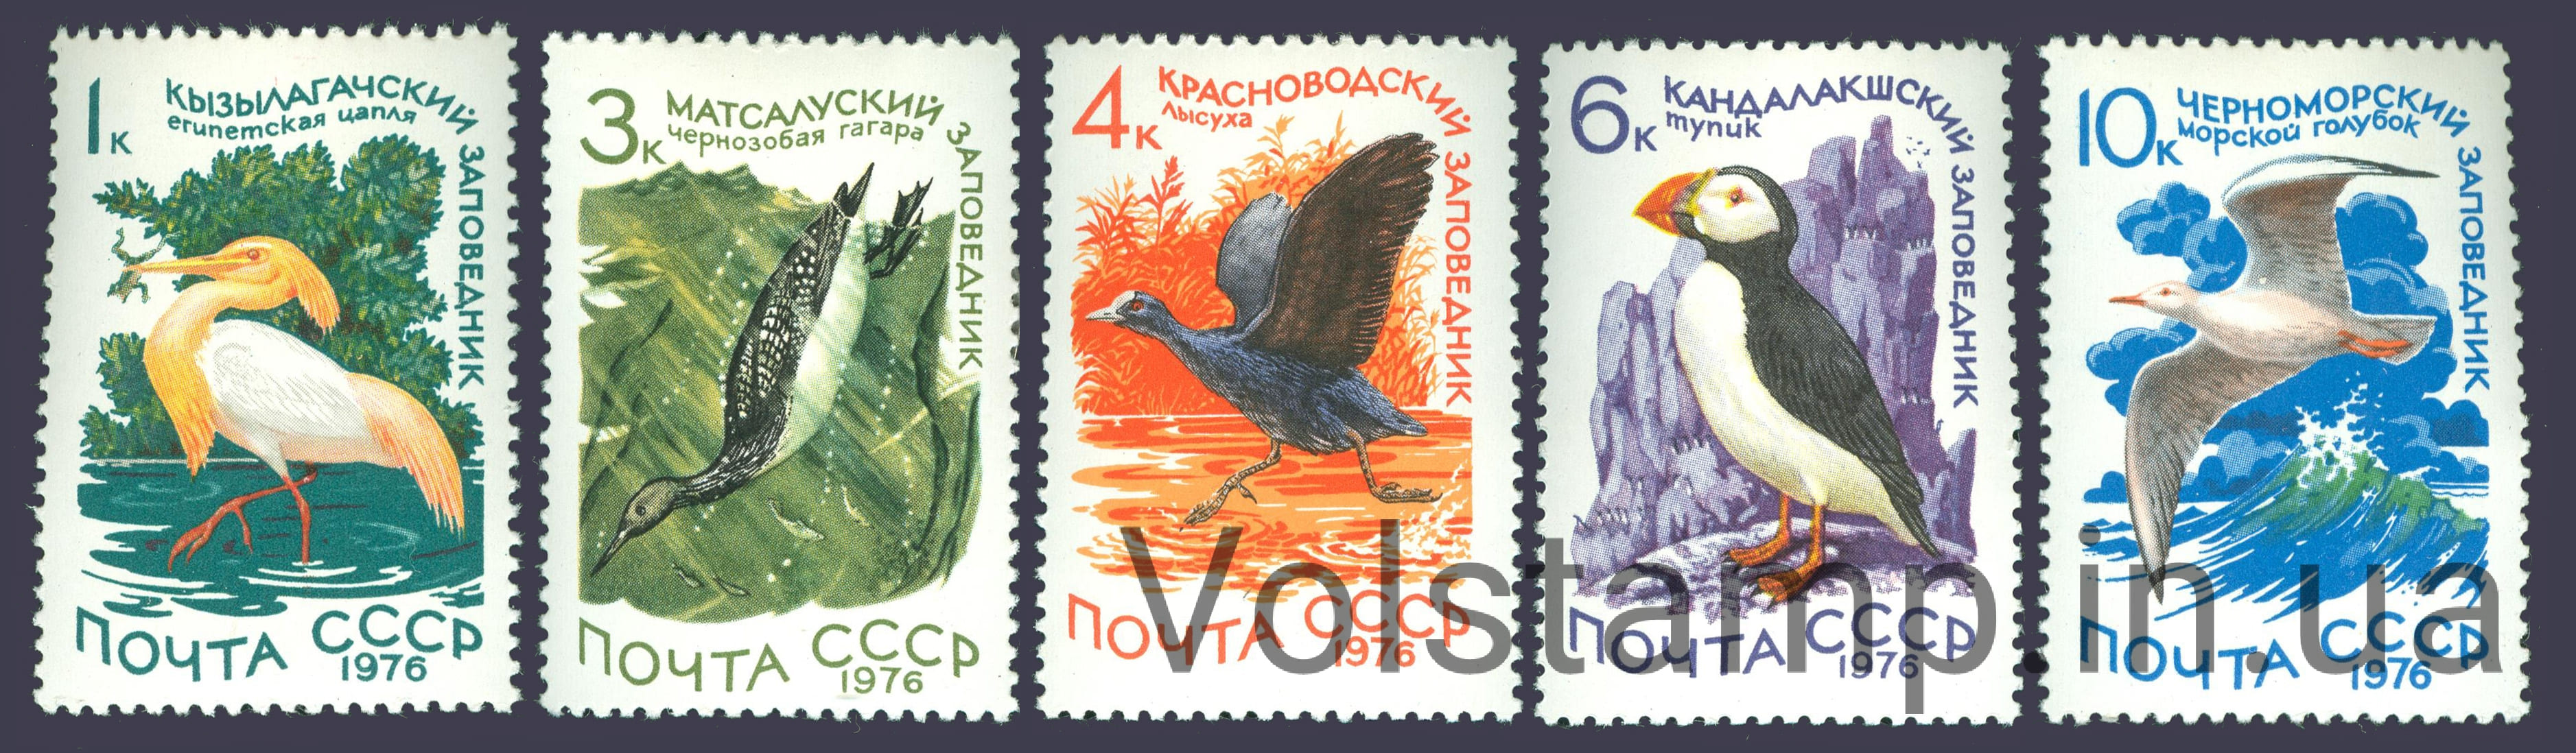 1976 серия марок Заповедники СССР №4556-4560